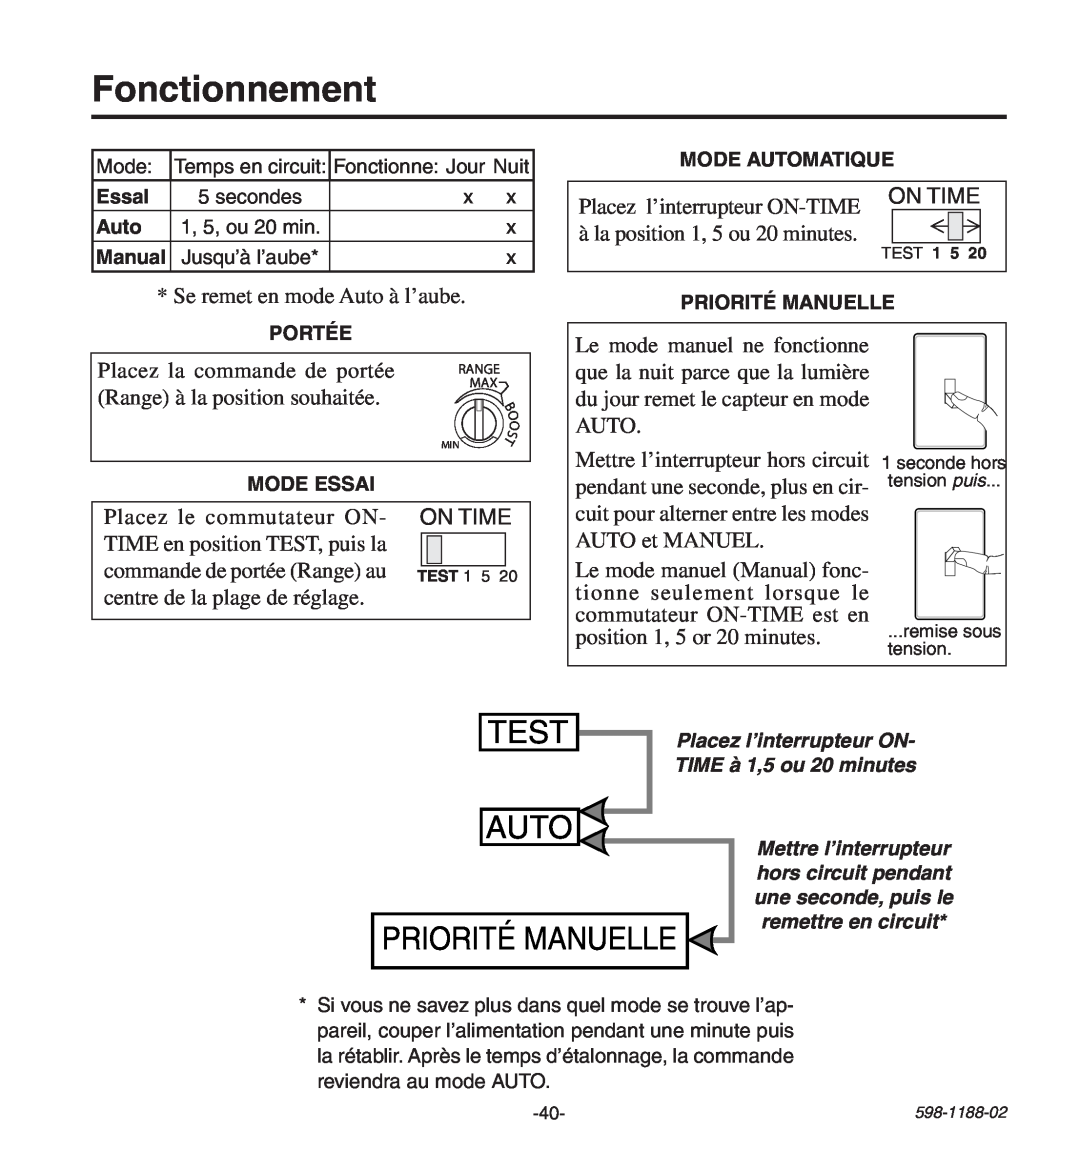 Heath Zenith HD-9260 manual Fonctionnement, Test, Auto, Priorité Manuelle 